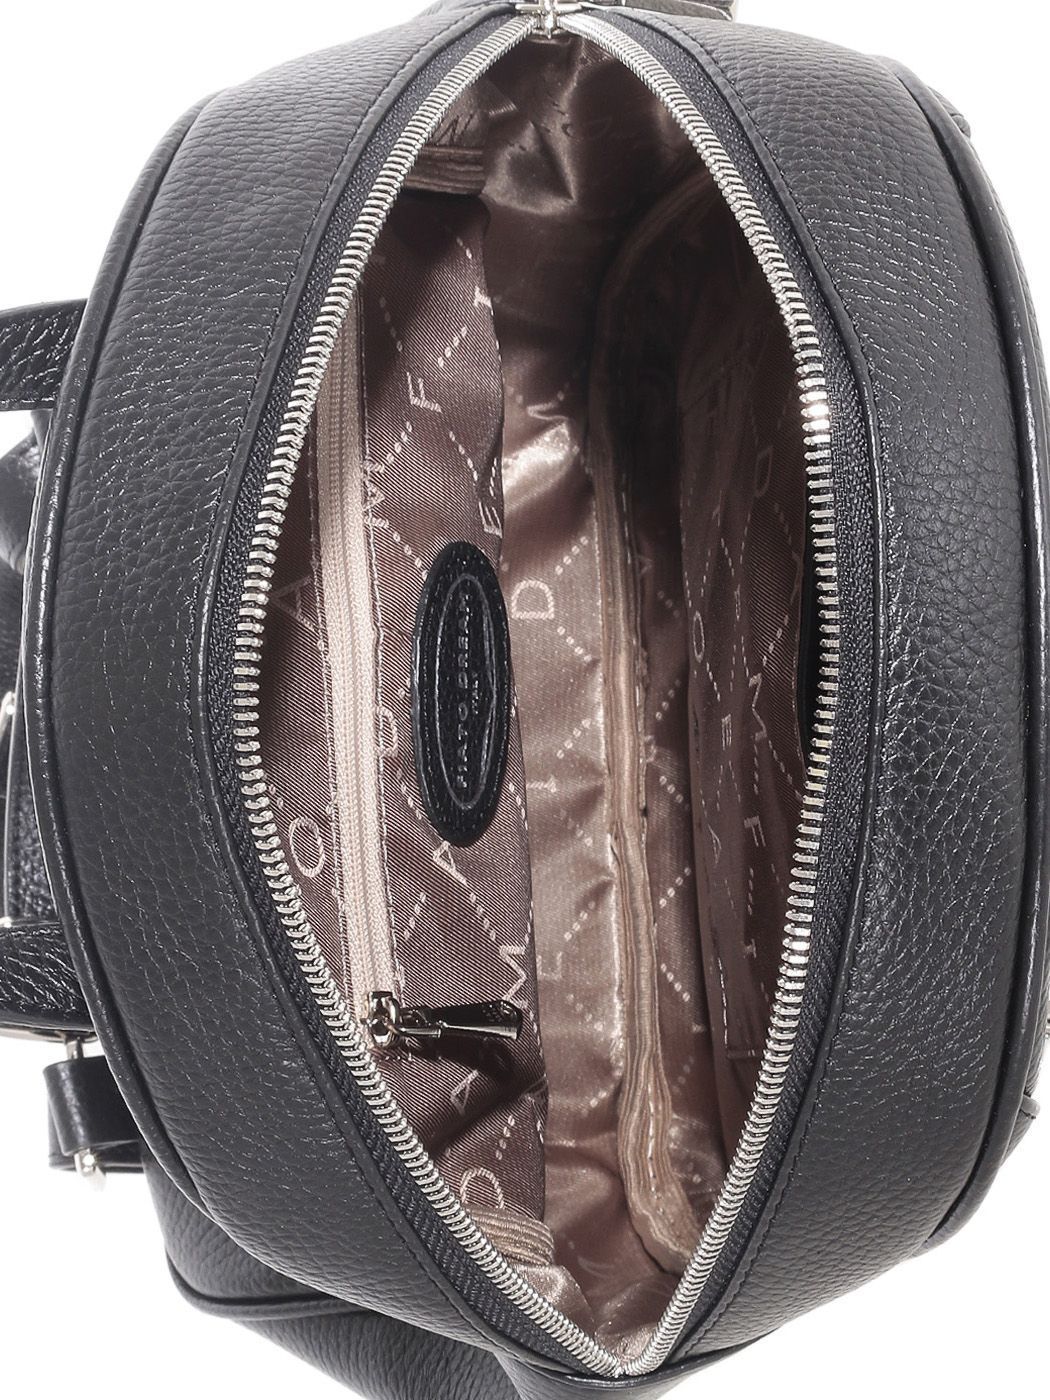 52131 FD черн рюкзак  жен. дем. натуральная кожа/текстиль черный Fiato Dream